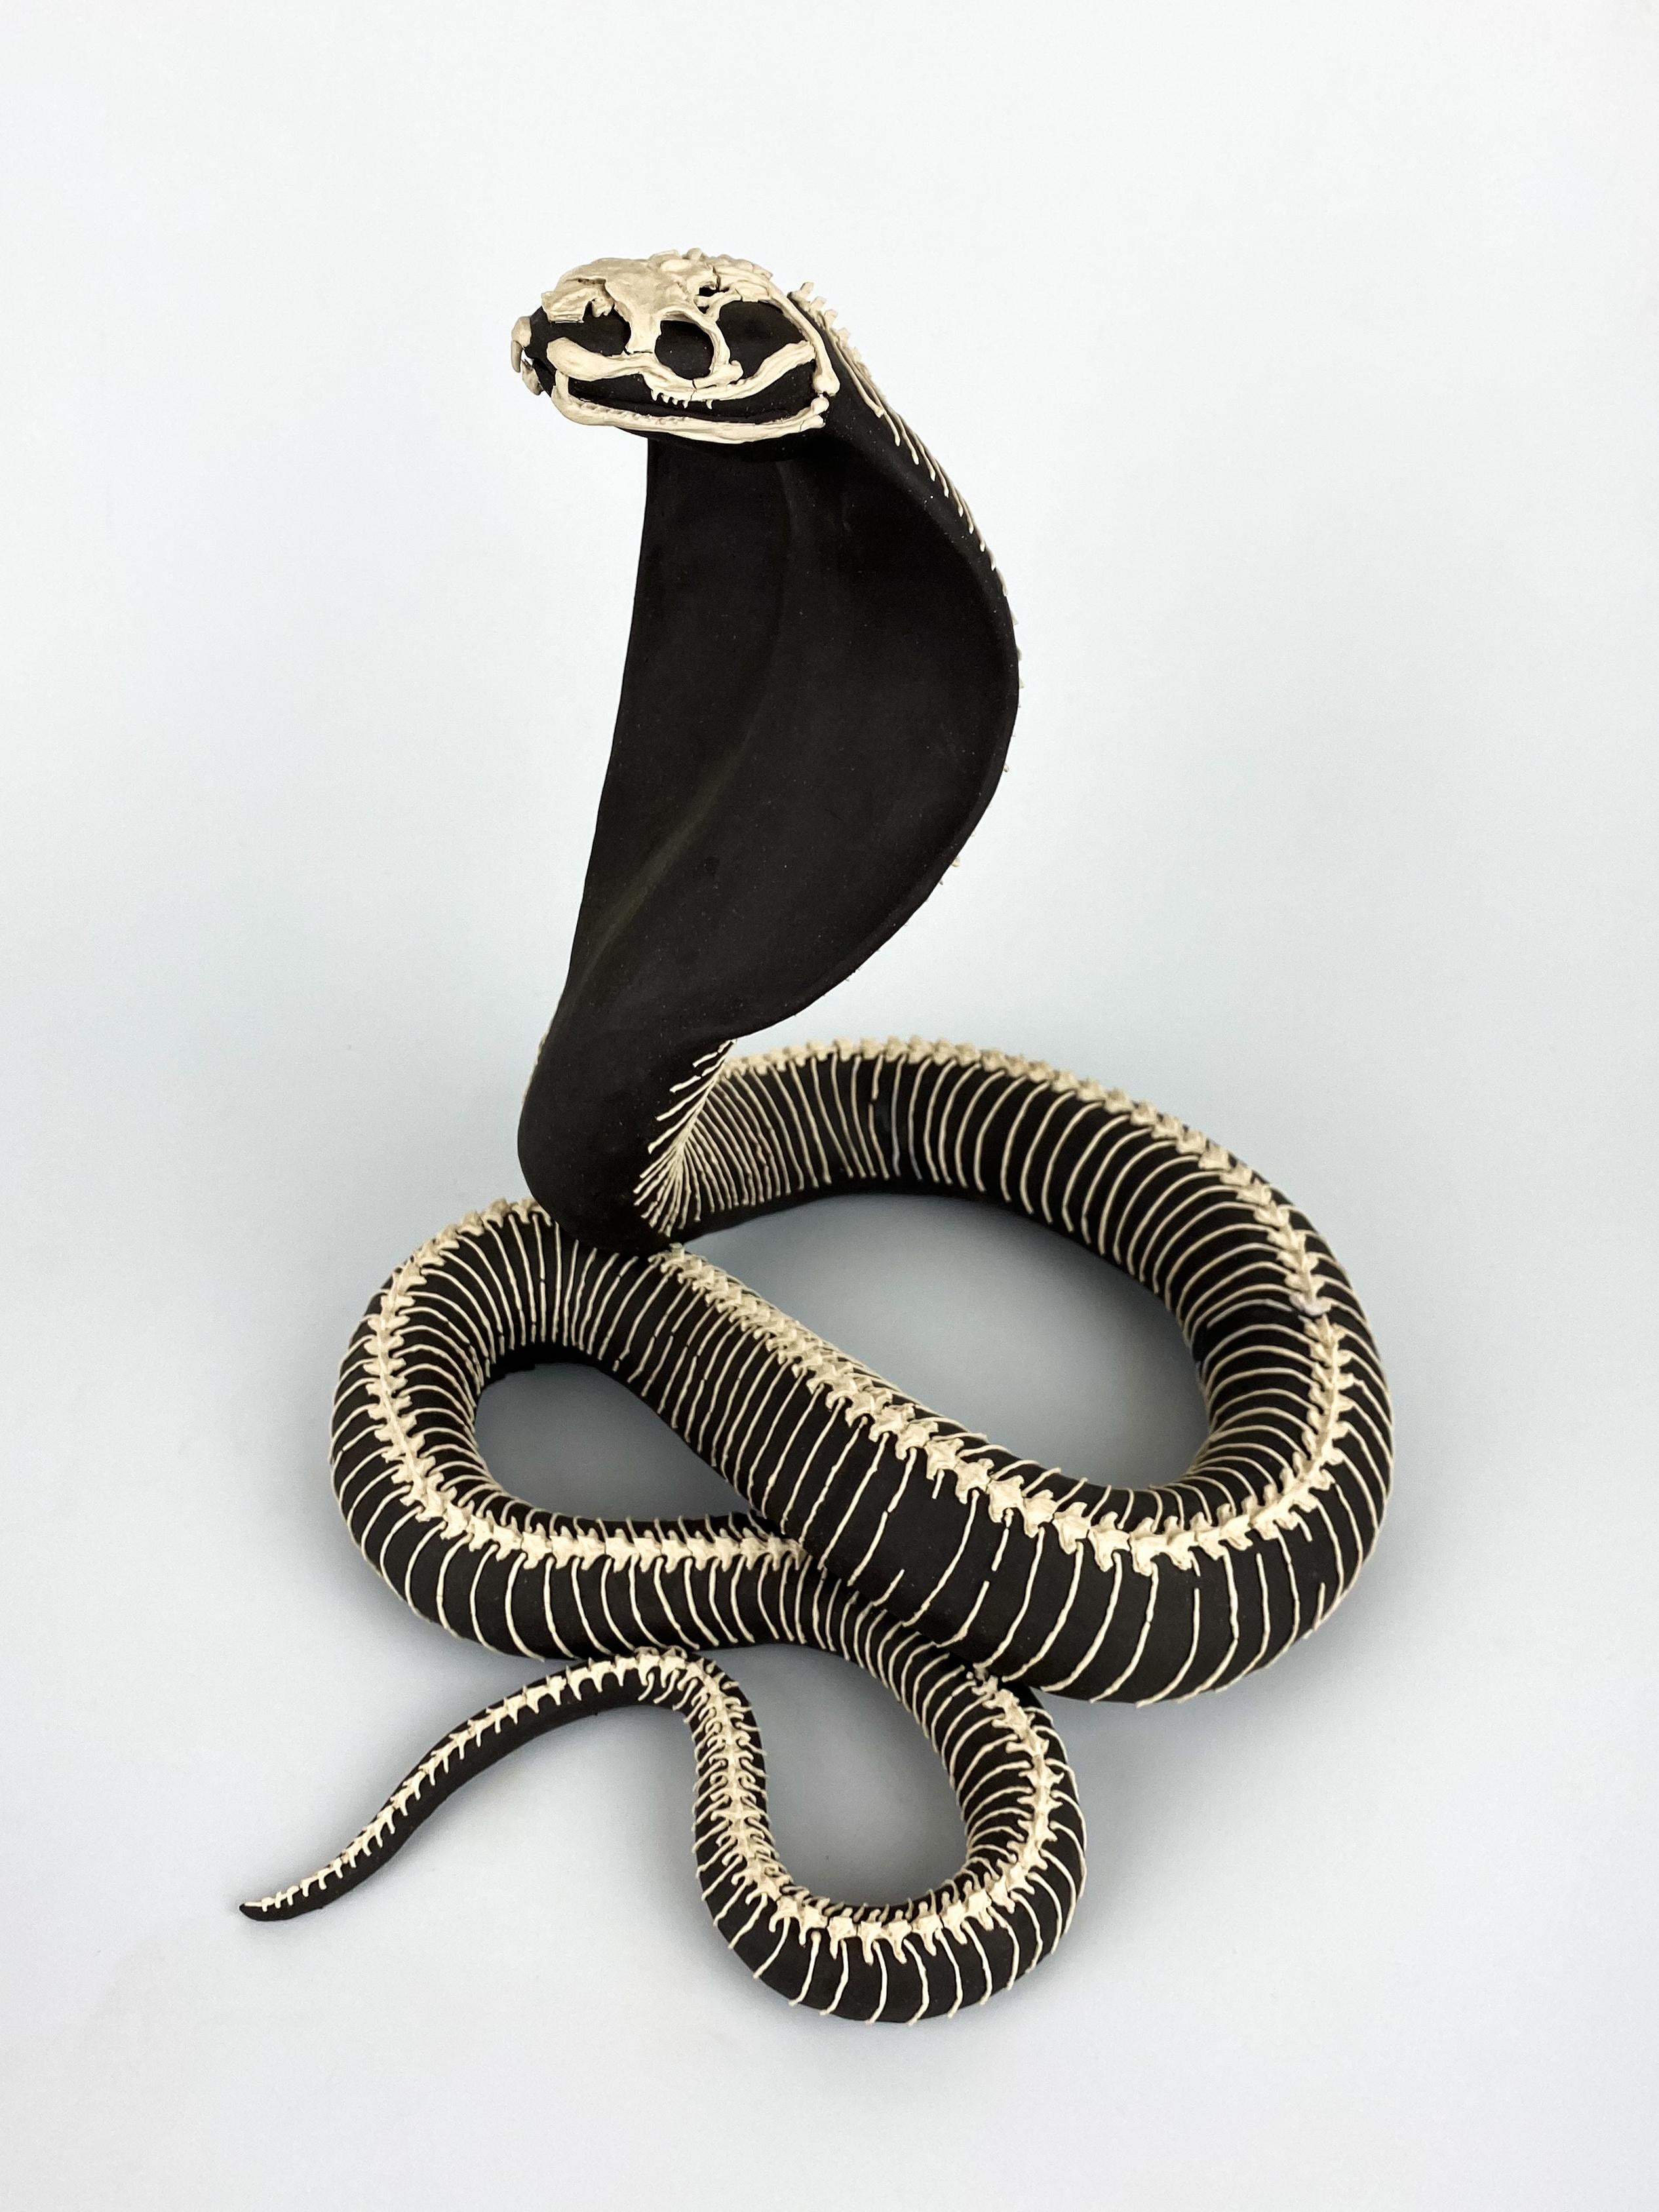 Cobra - Sculpture by Grace Khalsa